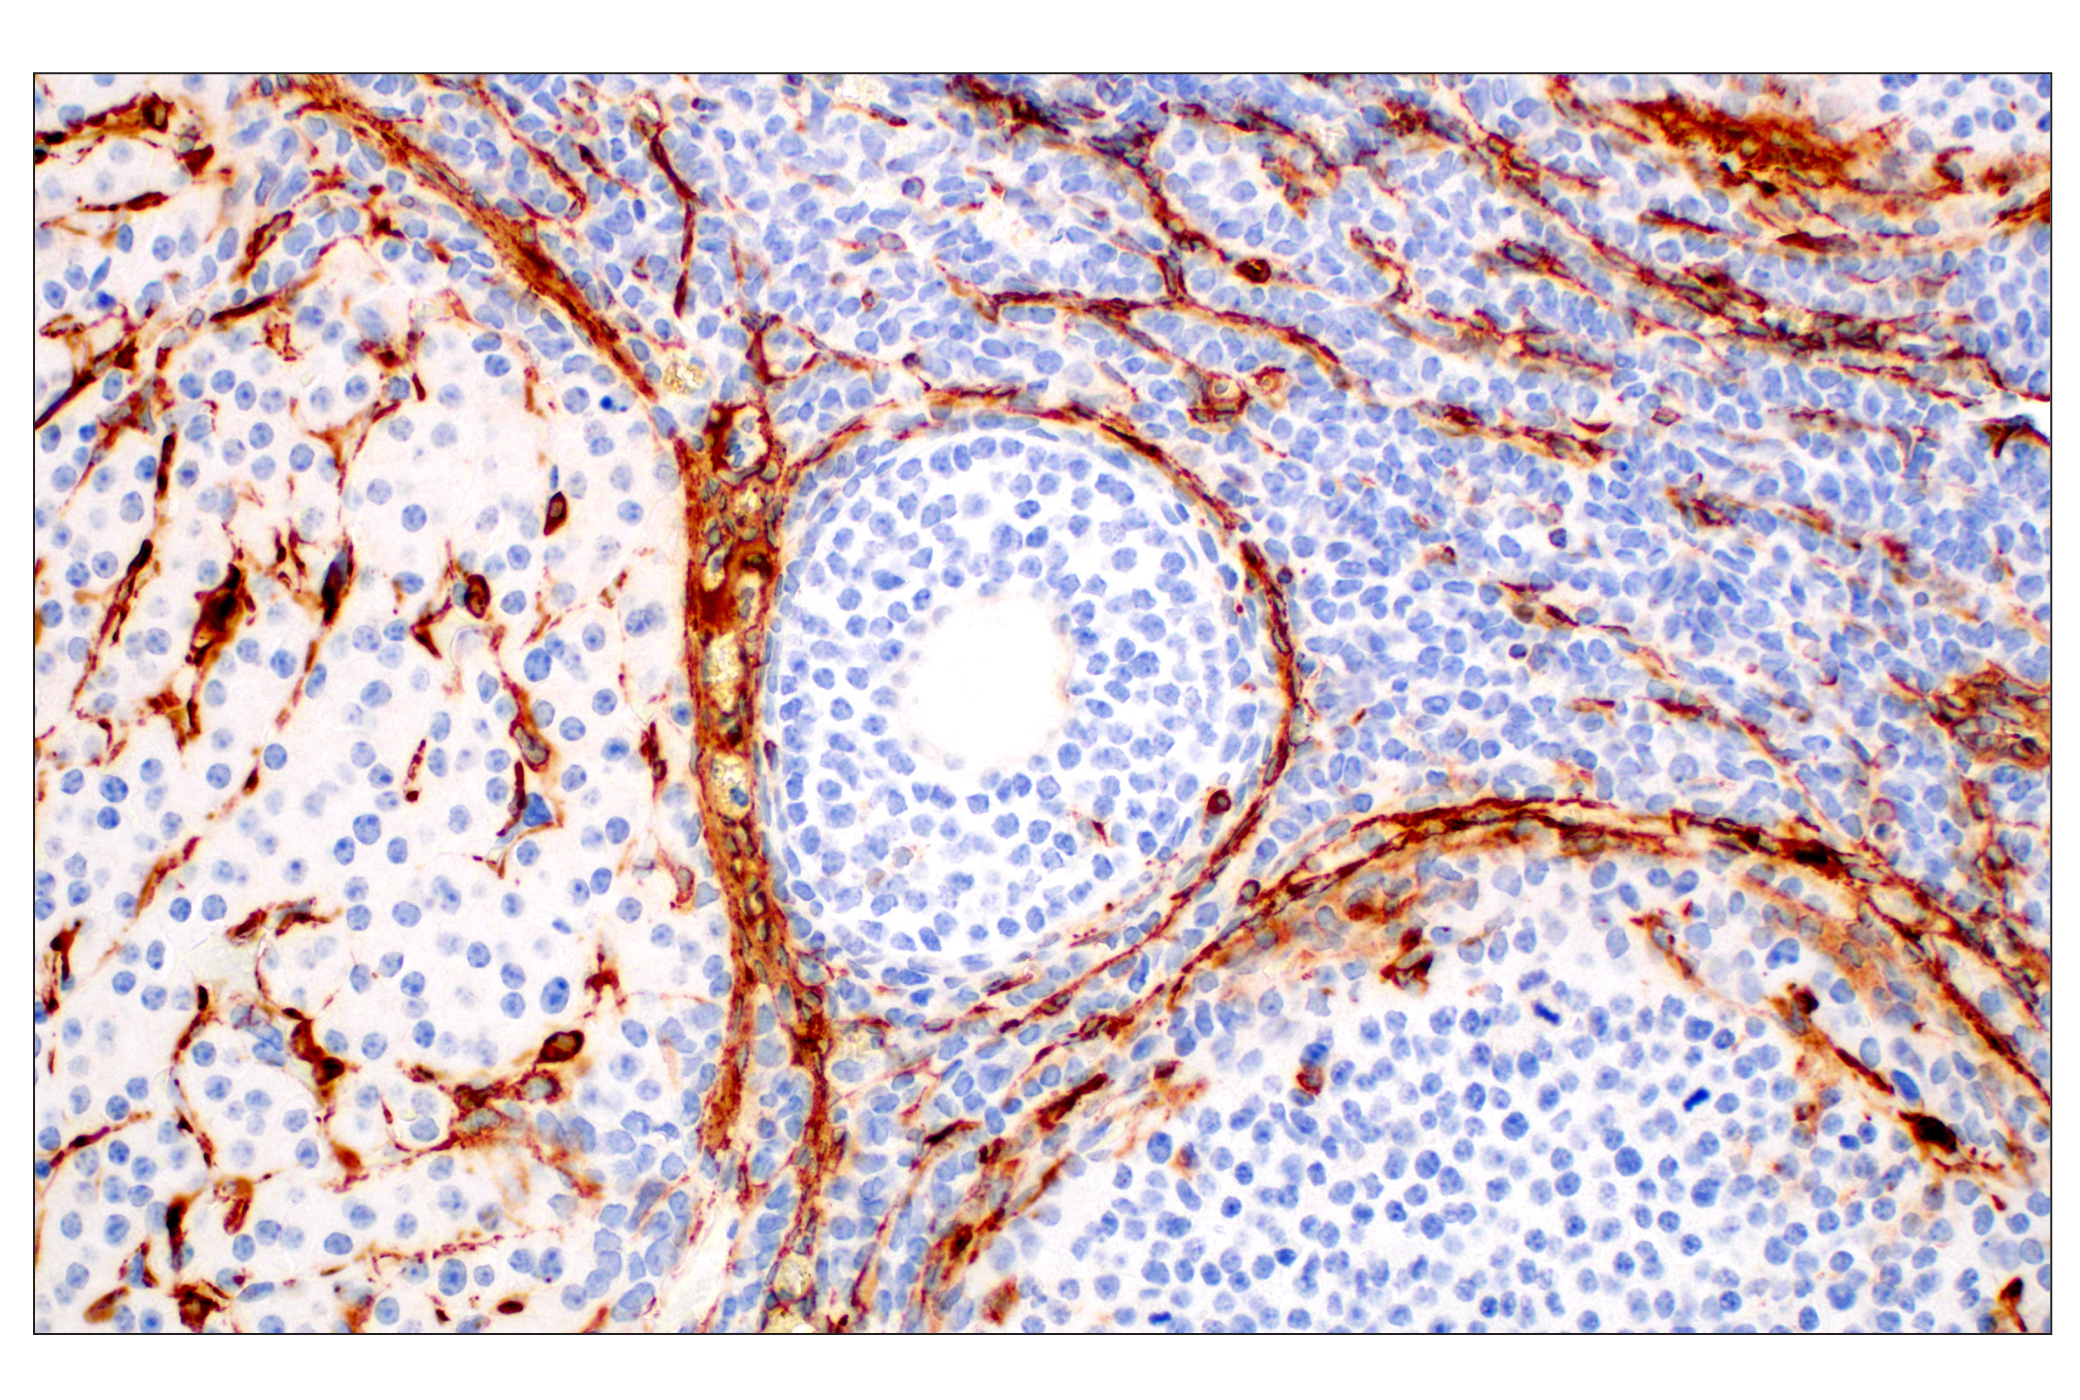  Image 49: TGF-β Fibrosis Pathway Antibody Sampler Kit